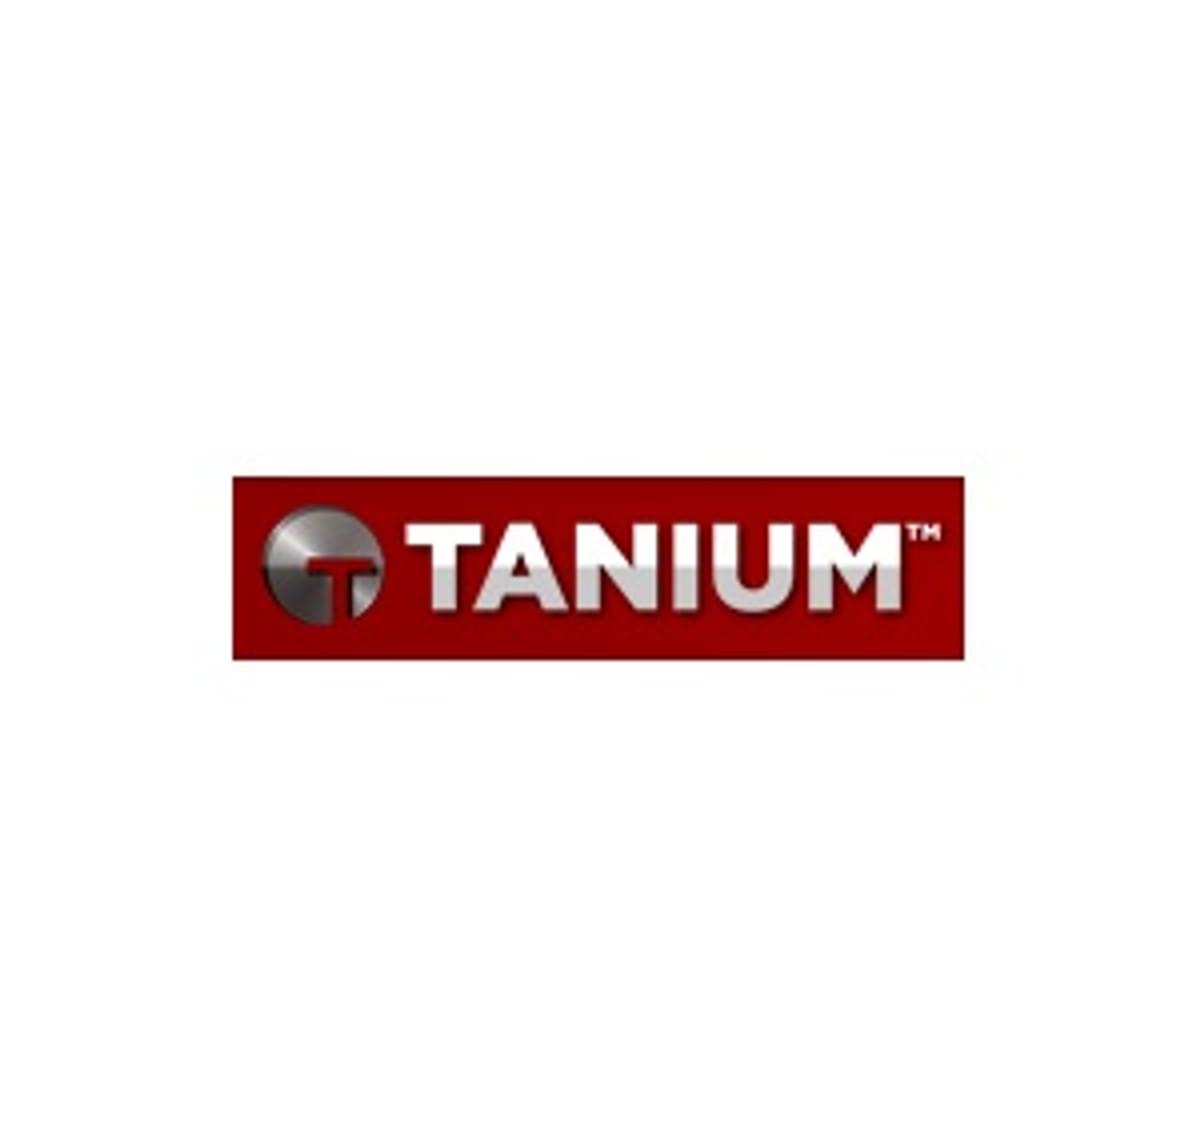 End-point security specialist Tanium krijgt 100 miljoen dollar kapitaalinjectie image